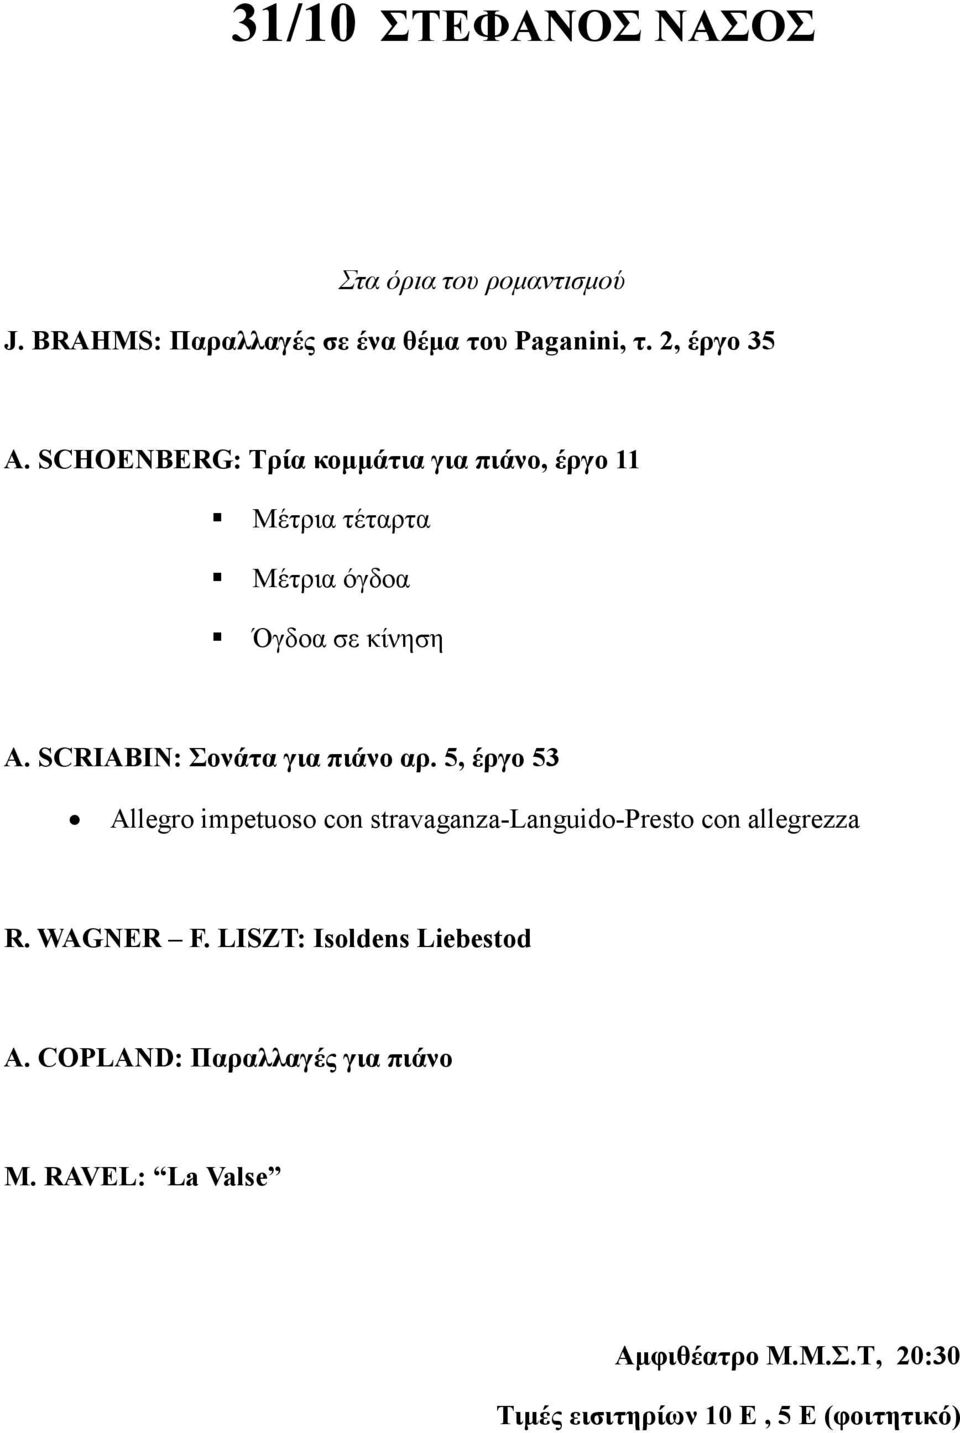 SCRIABIN: Σονάτα για πιάνο αρ. 5, έργο 53 Allegro impetuoso con stravaganza-languido-presto con allegrezza R.